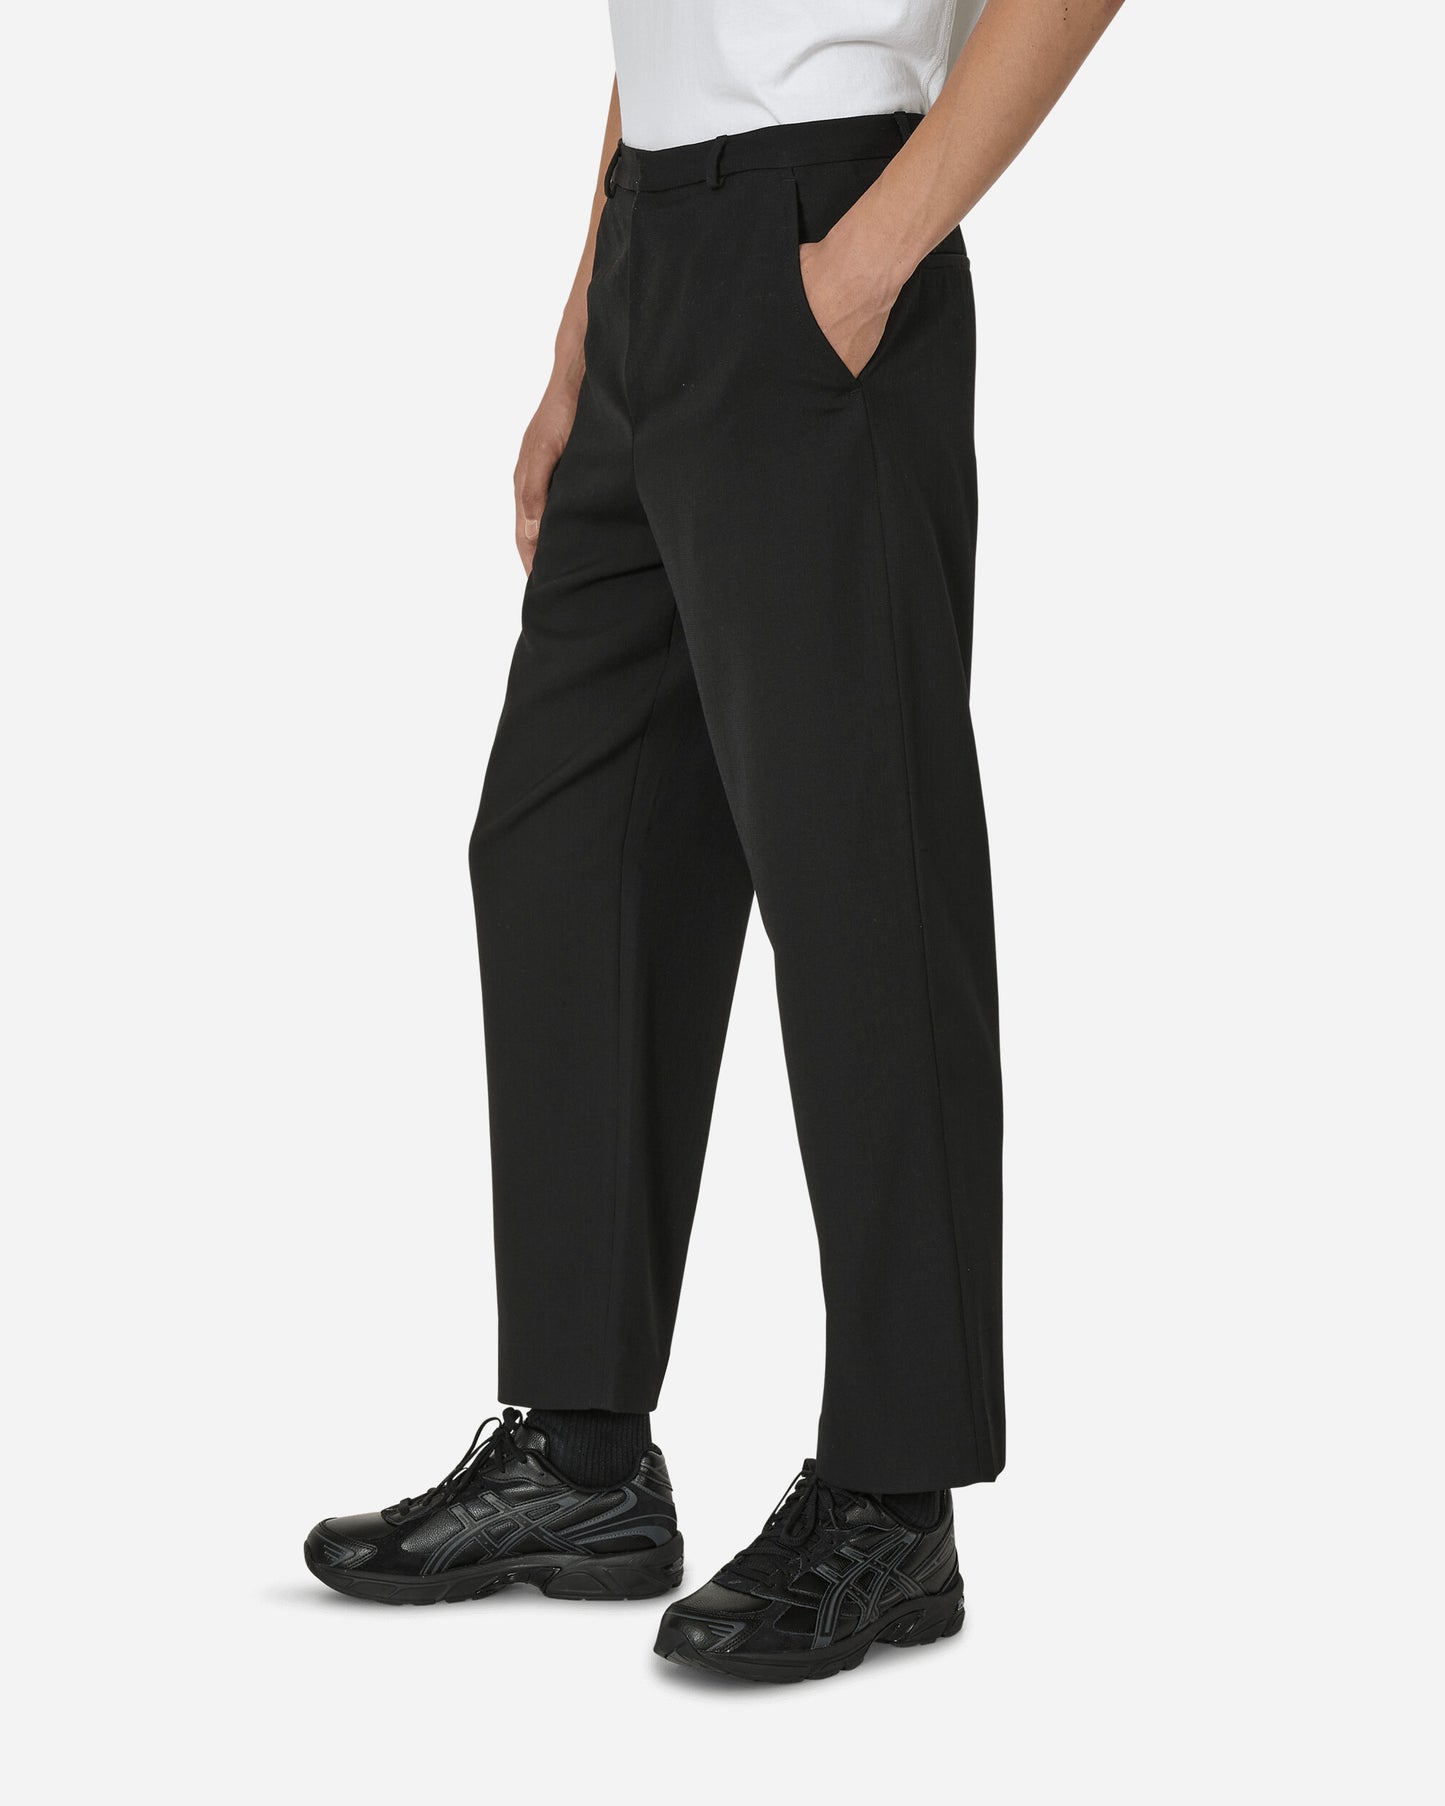 Acne Studios Trousers Fn-Mn-Trou000802 Black Pants Trousers BK0514- 900